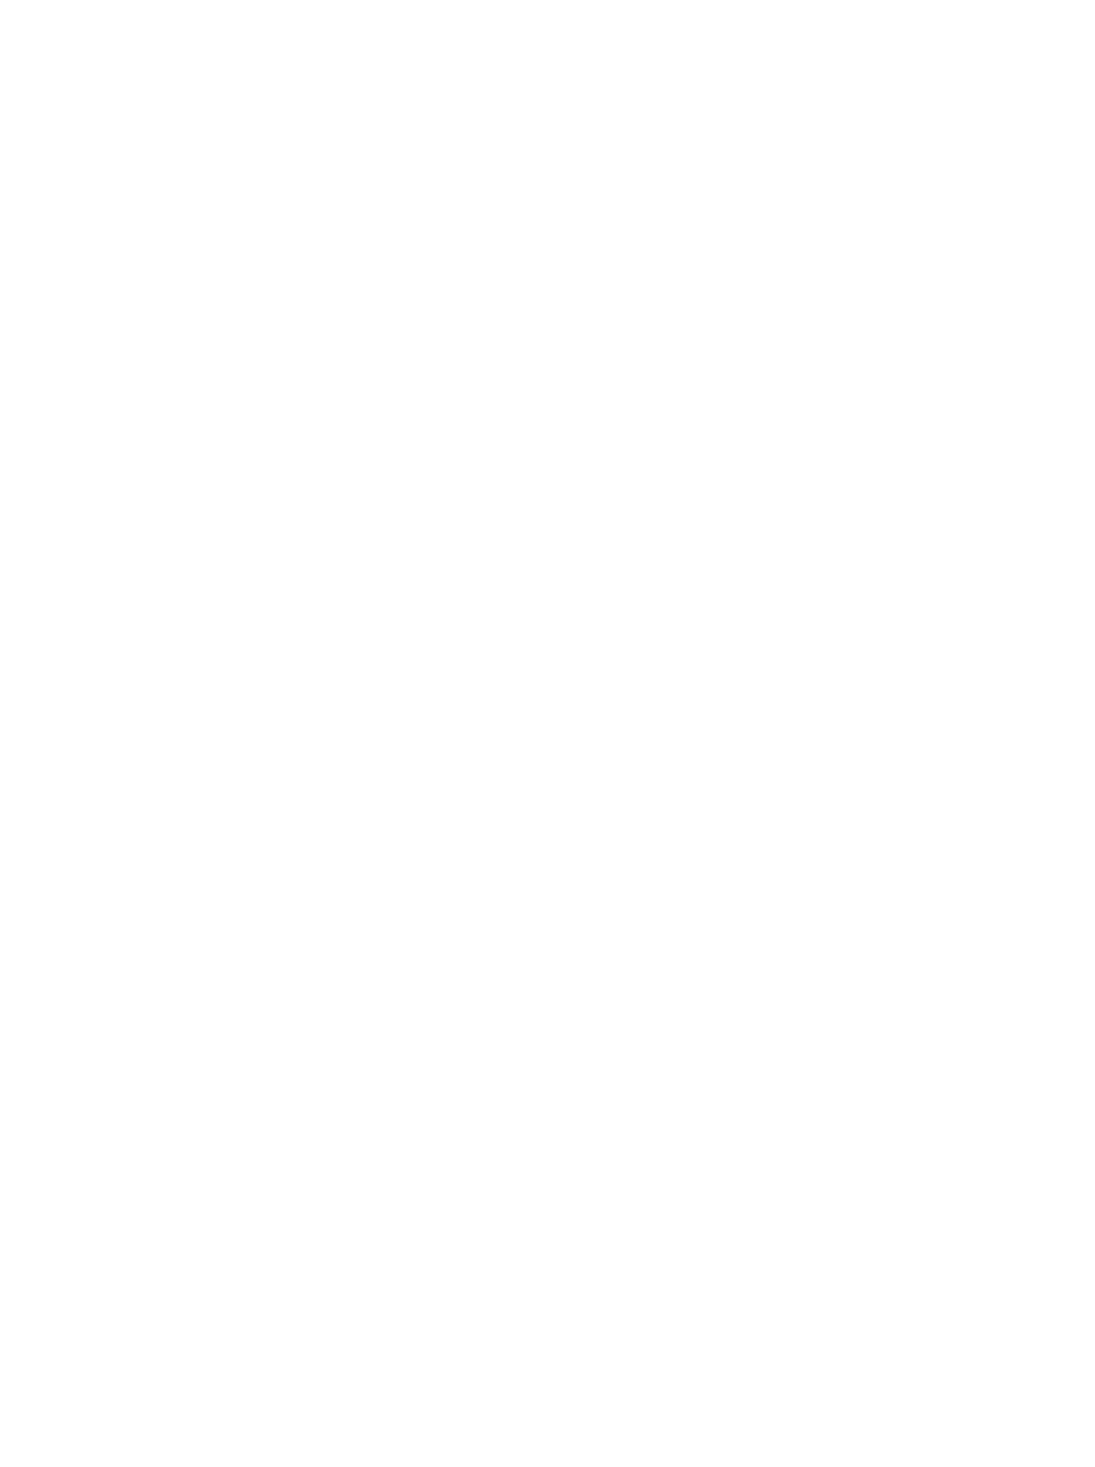 Szkoła Podstawowa Edison - Logo / Primary School Edison Logo